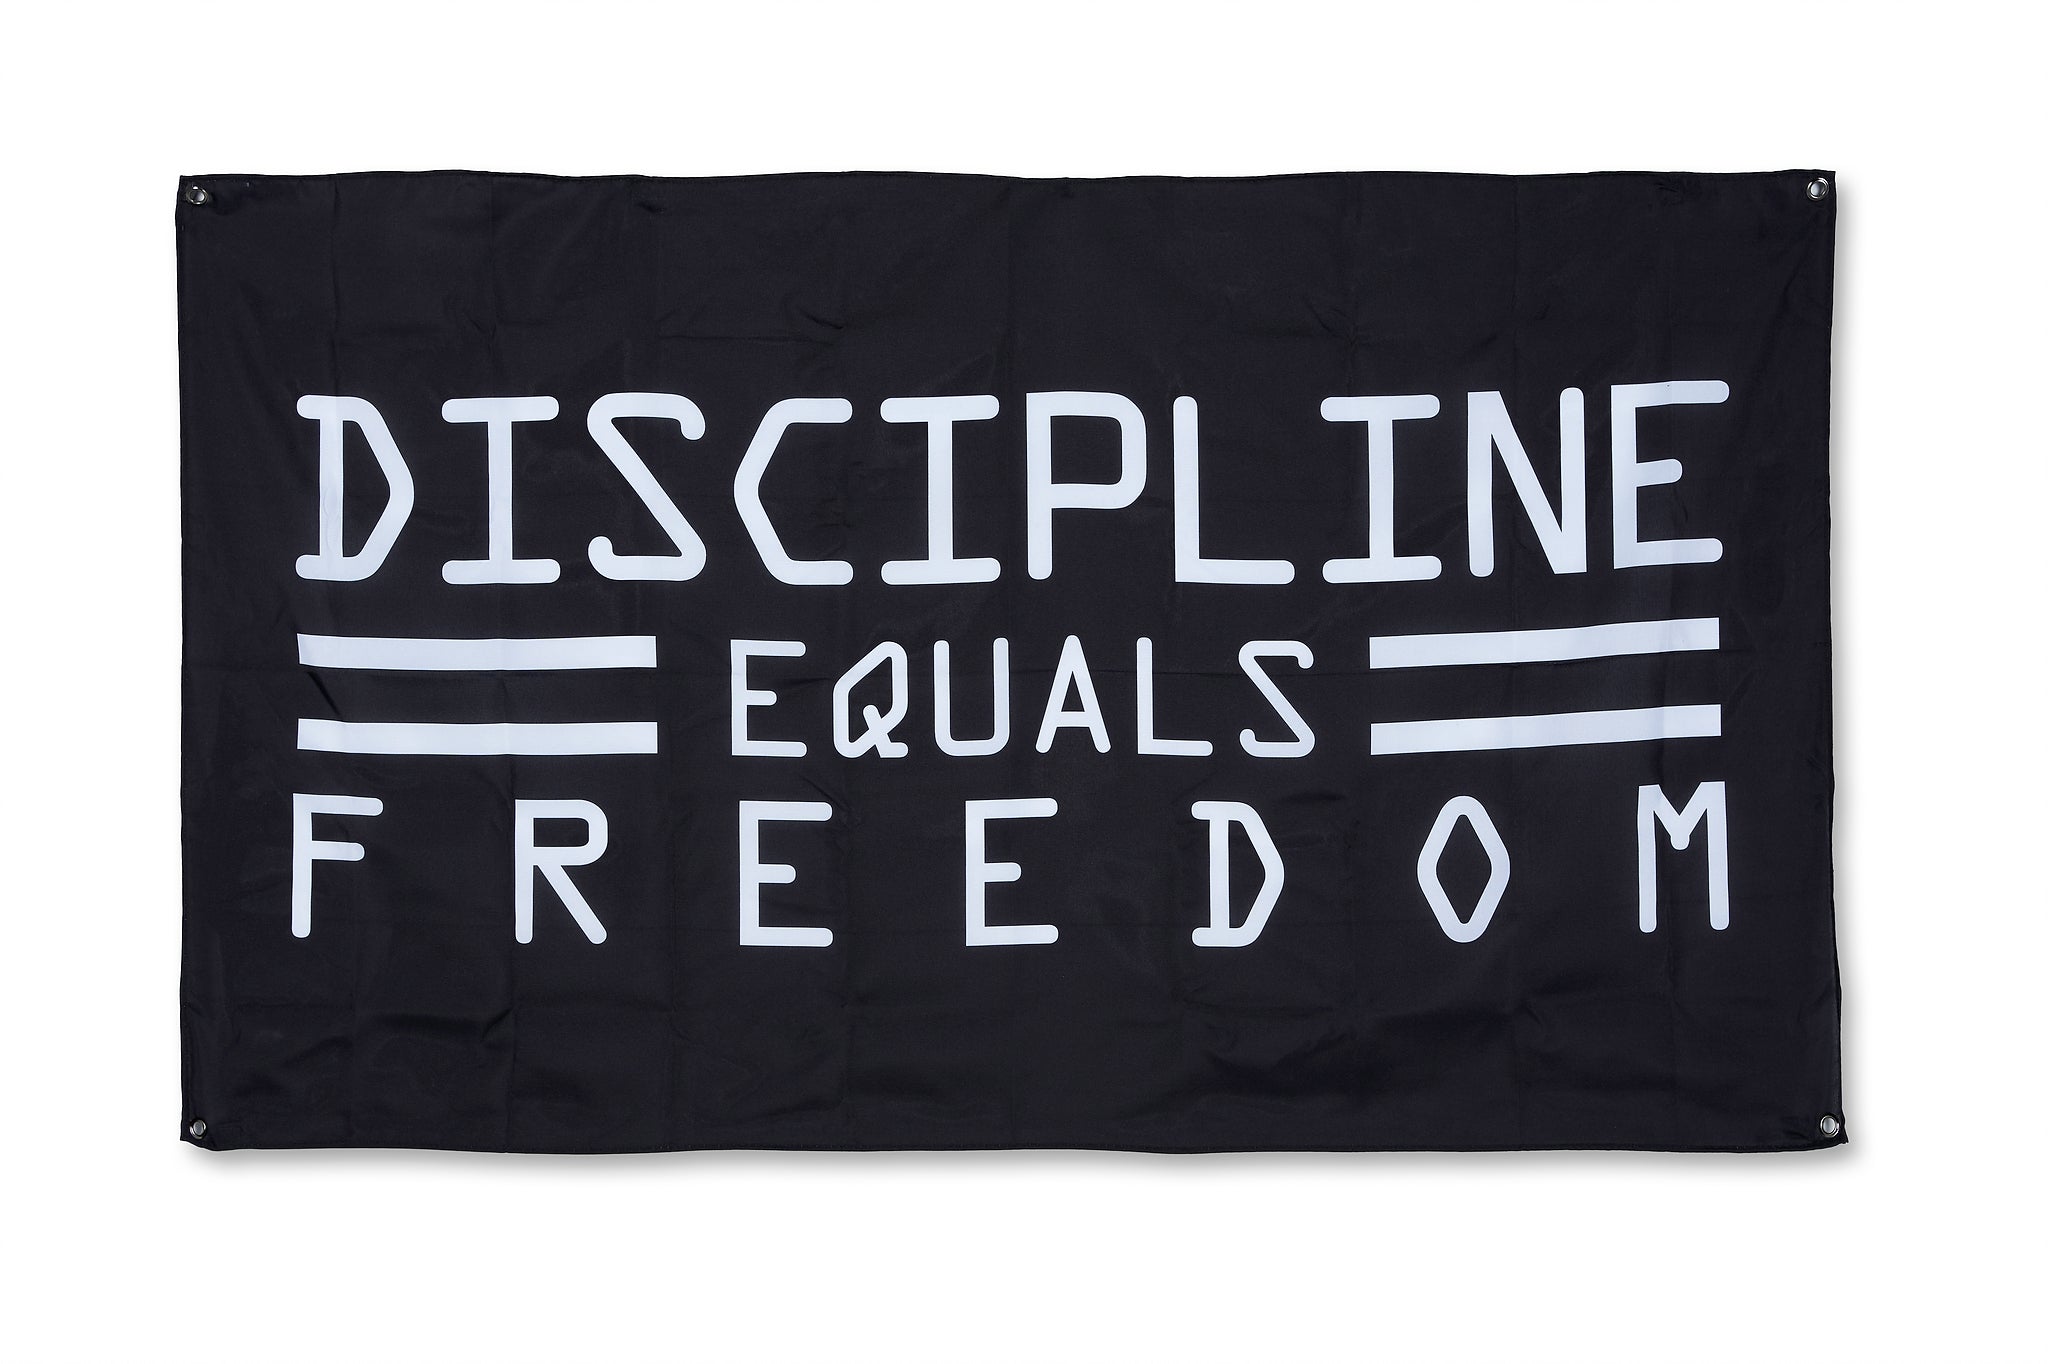 Discipline equals freedom